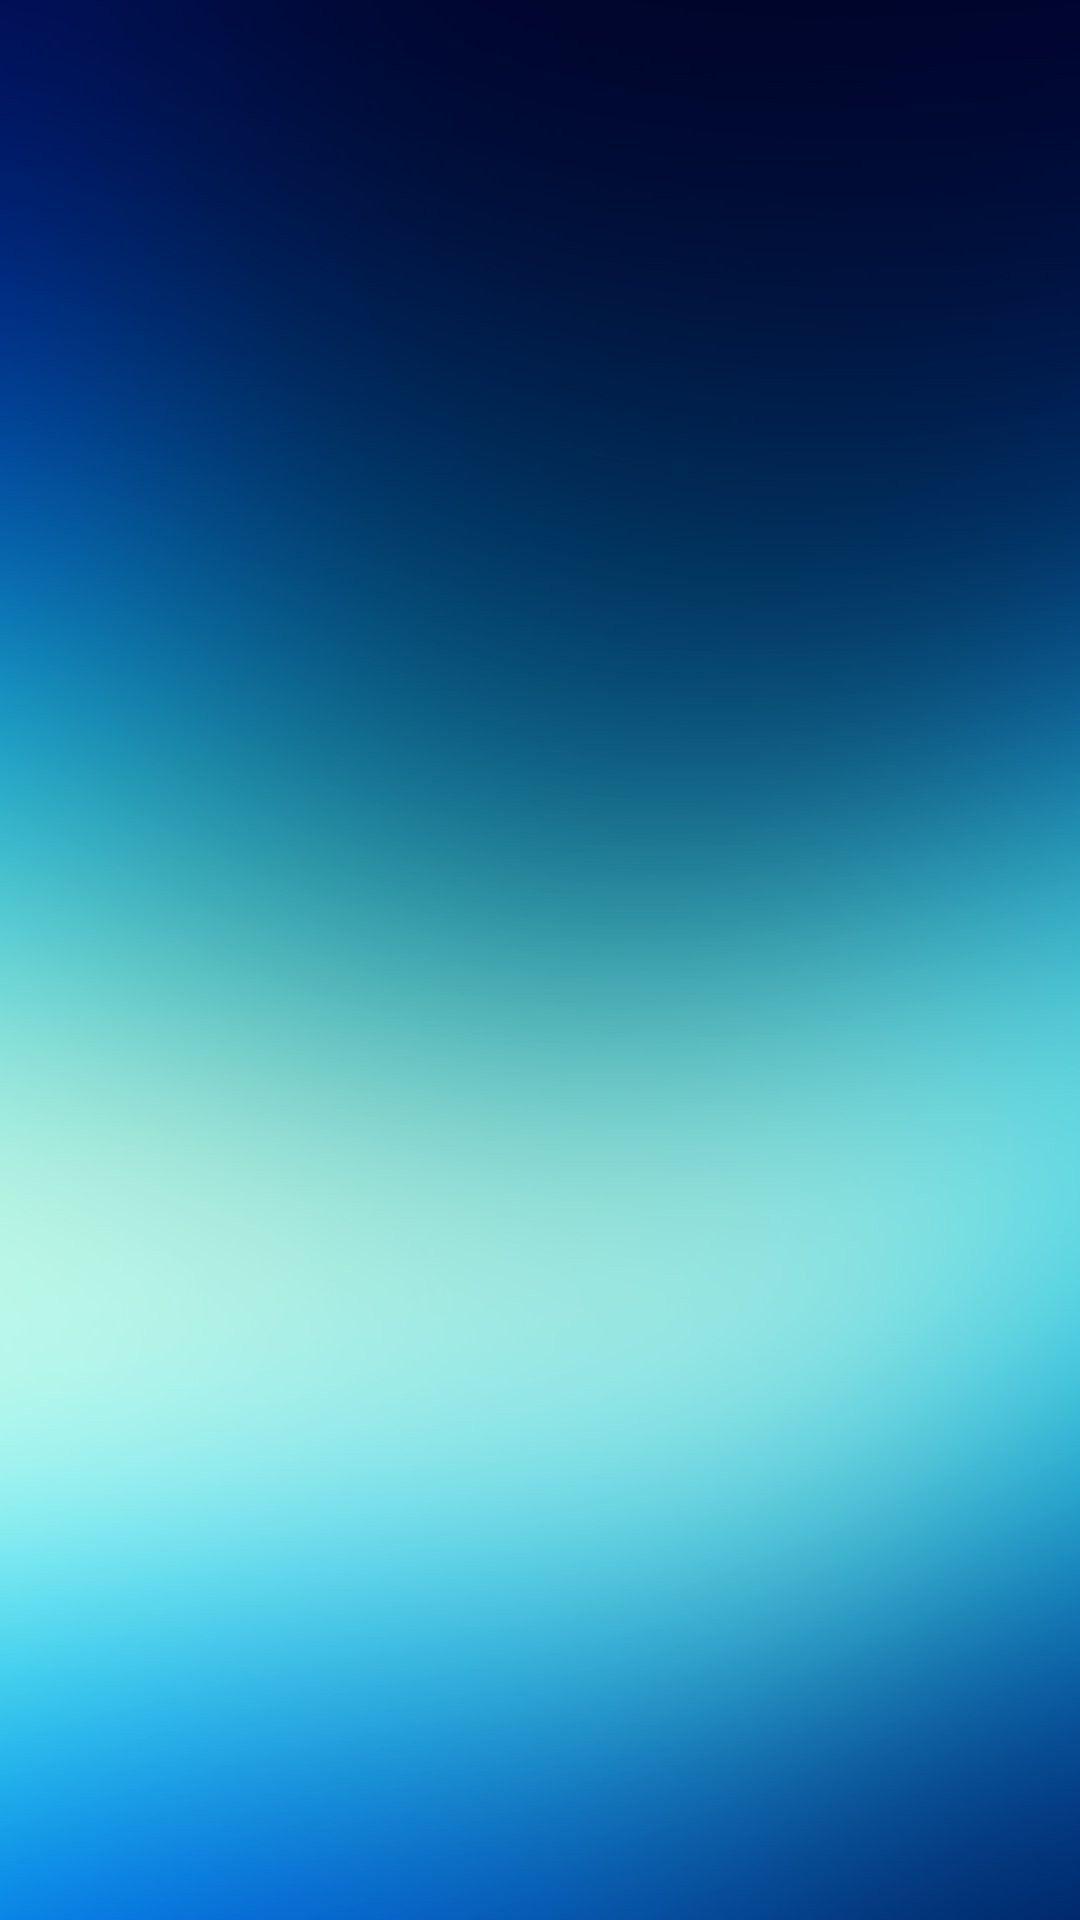 Blue Blur iPhone 6 Plus Wallpaper 26343 iPhone 6 Plus